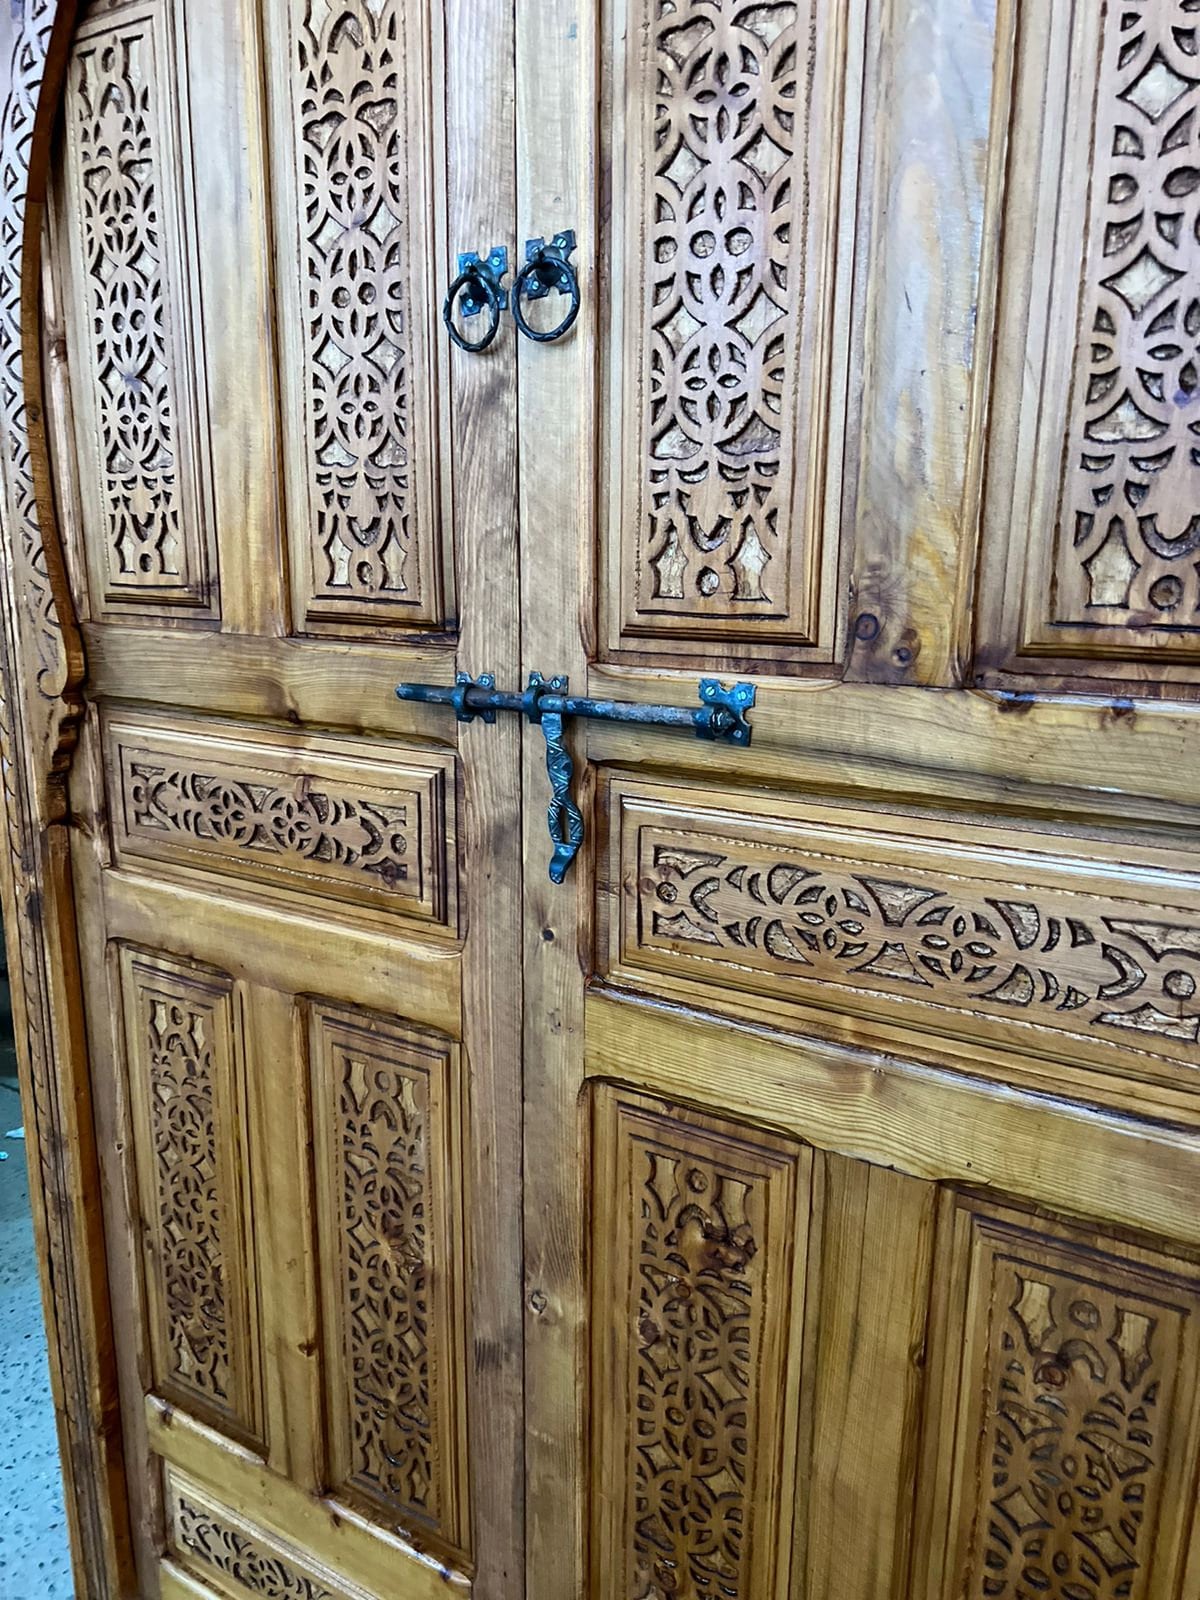 Traditional Moroccan Carved Wood Door, With an illustration of Mooring Model, Reclaimed door, Entrance Door .